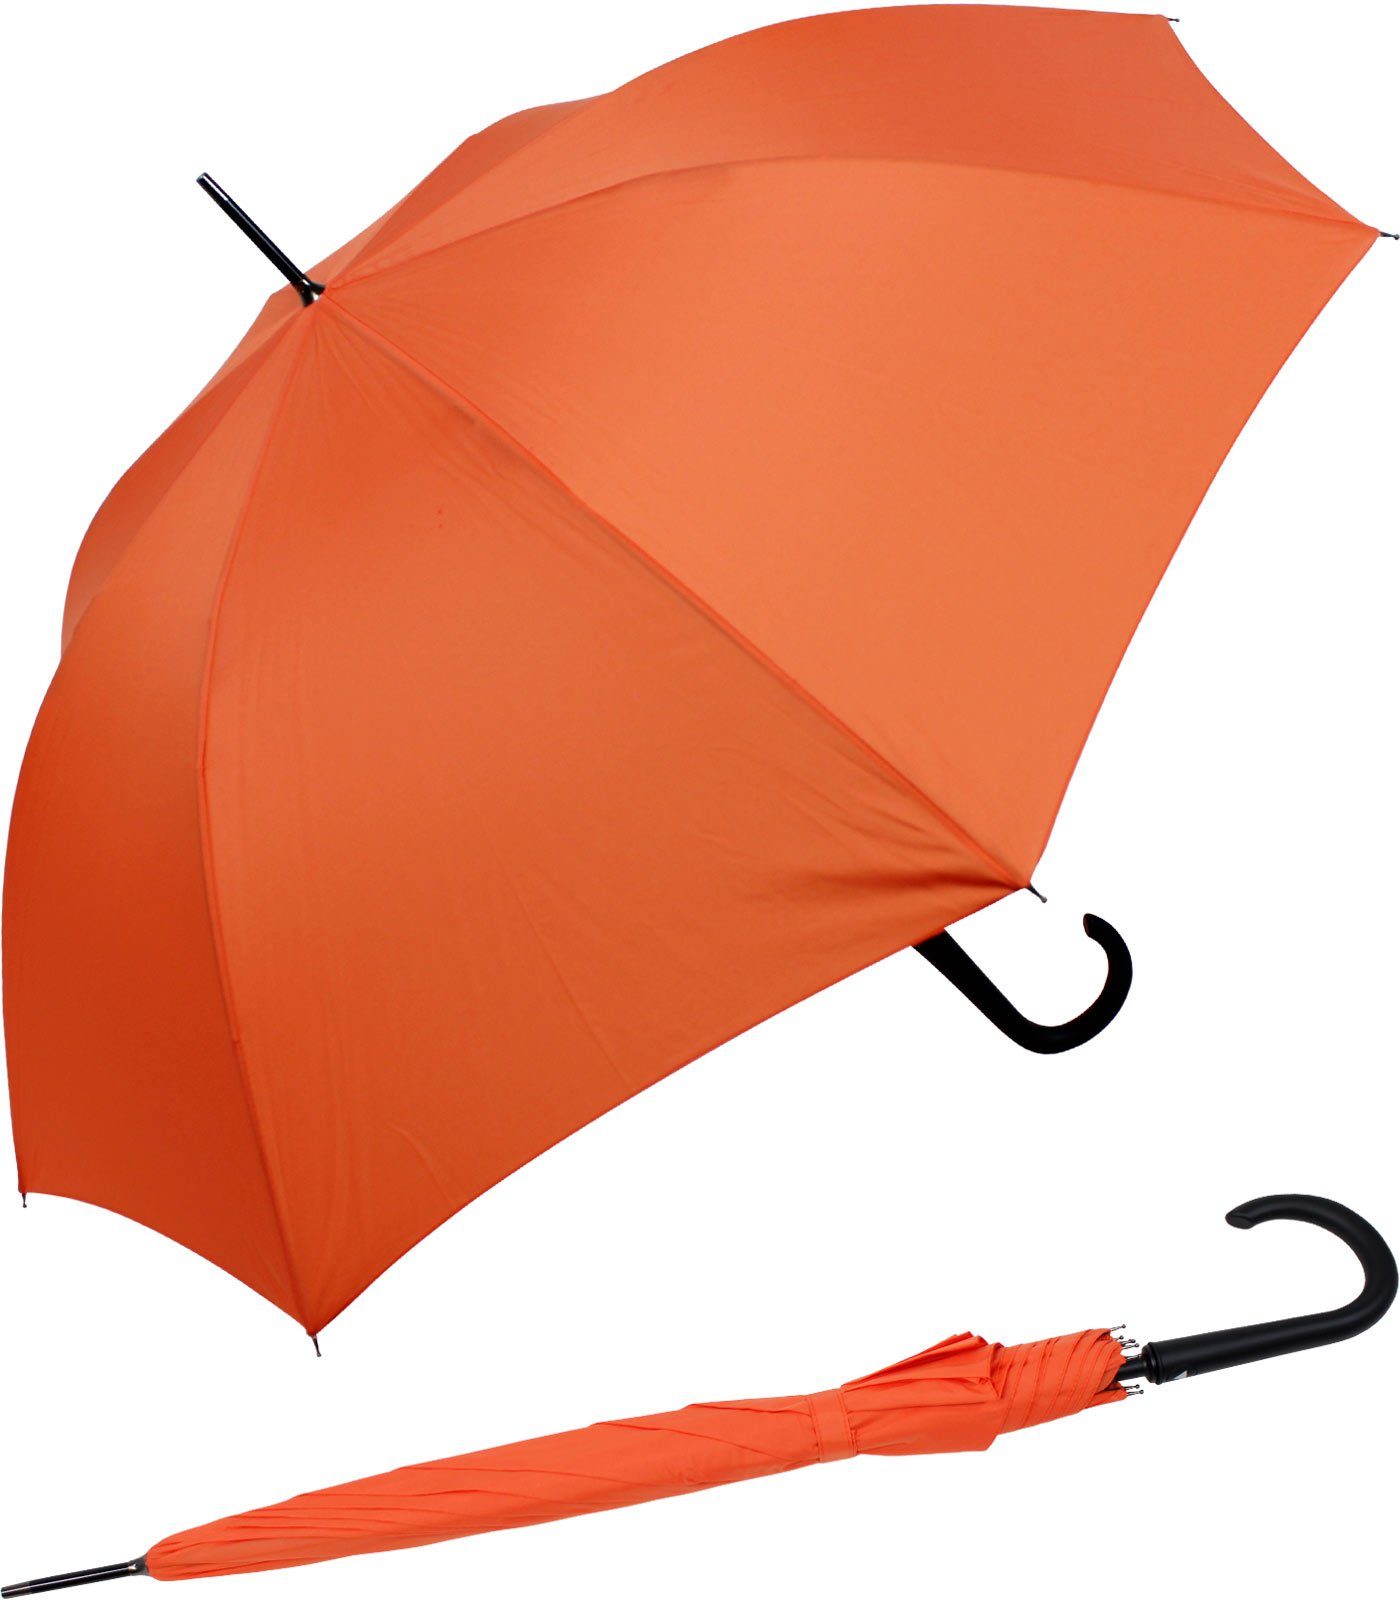 mit RS-Versand stabiler Auslöseknopf integrierter Langregenschirm Auf-Automatik, Stahl-Fiberglas-Gestell, Regenschirm orange großer